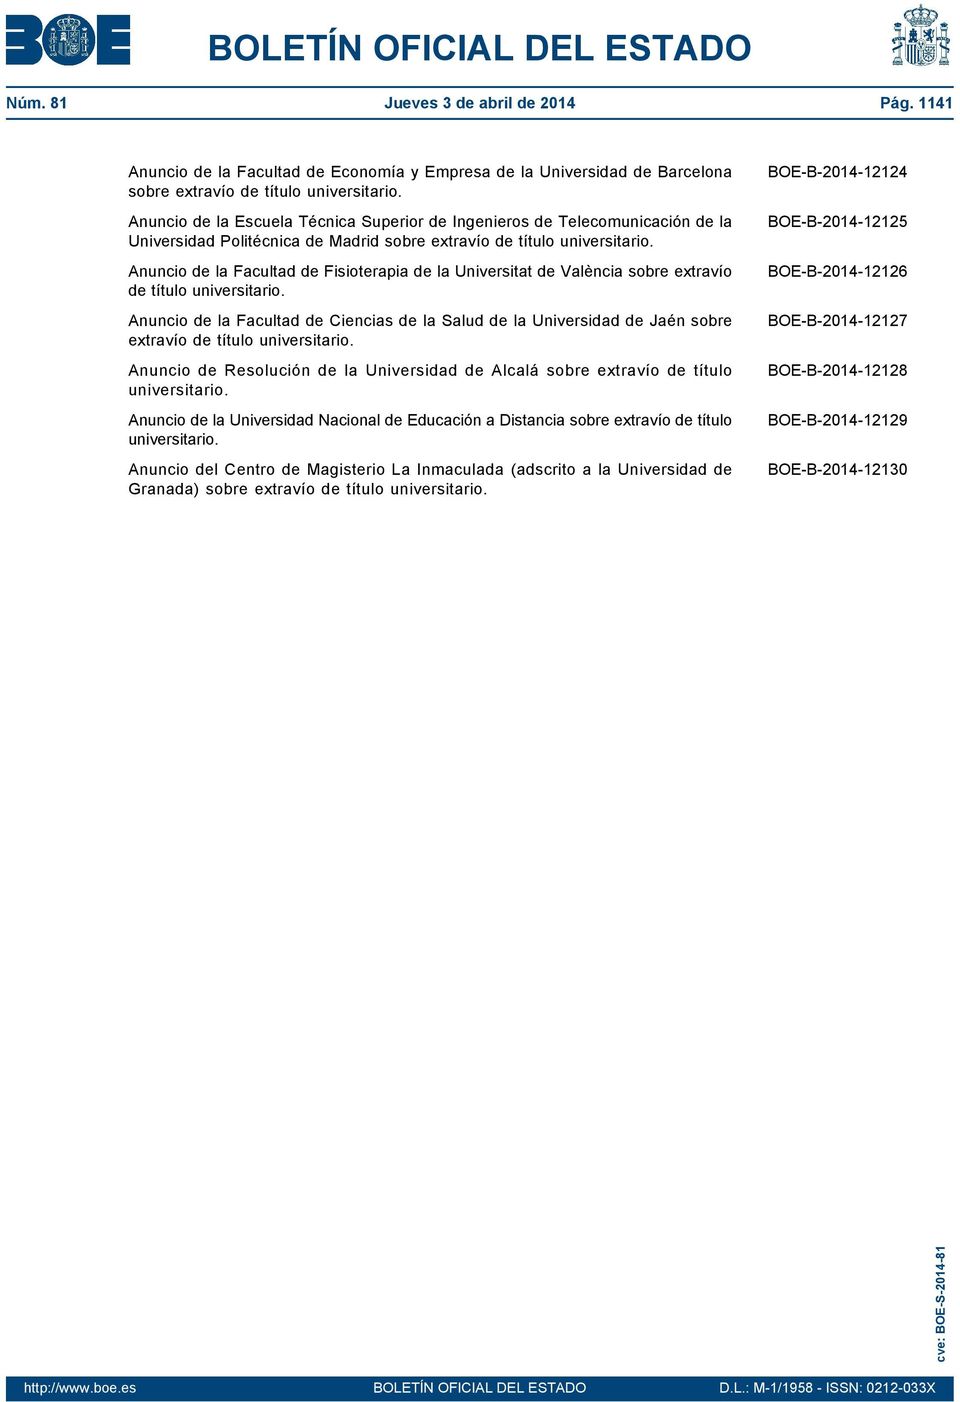 Anuncio de la Facultad de Fisioterapia de la Universitat de València sobre extravío de título universitario.